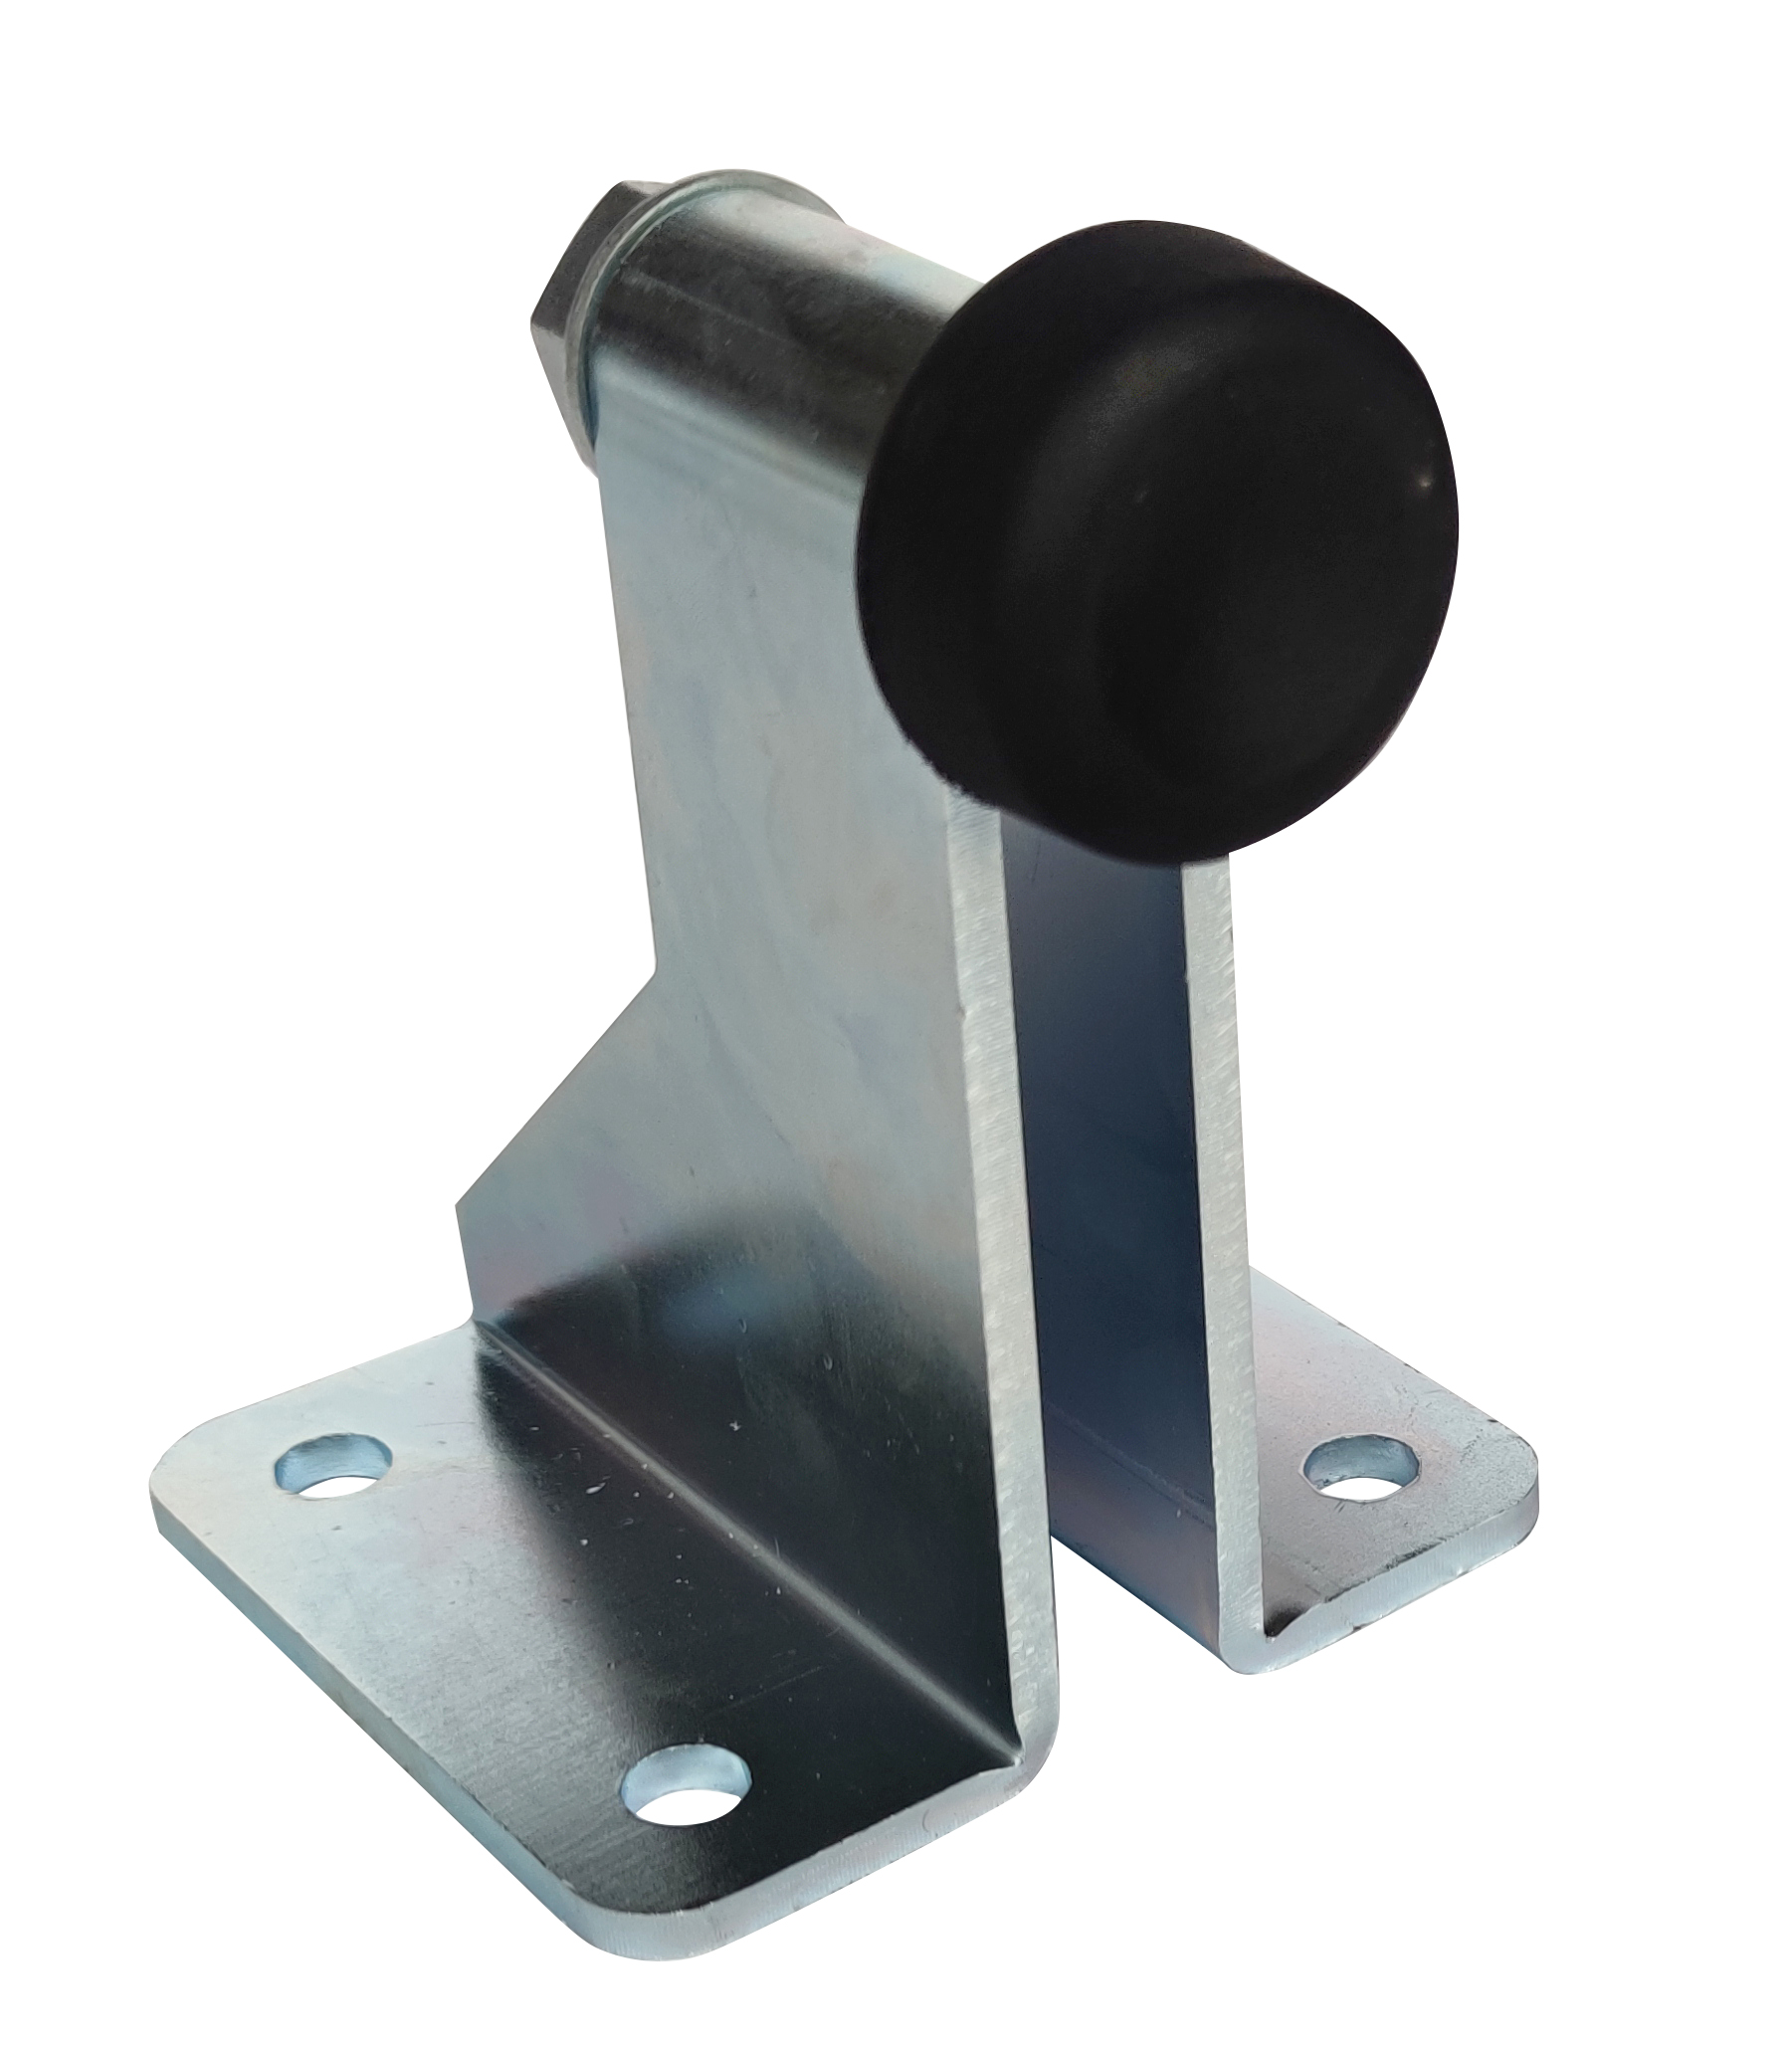 Adjustable Metal Gate Stopper Zinc Plated For Sliding Cantilever